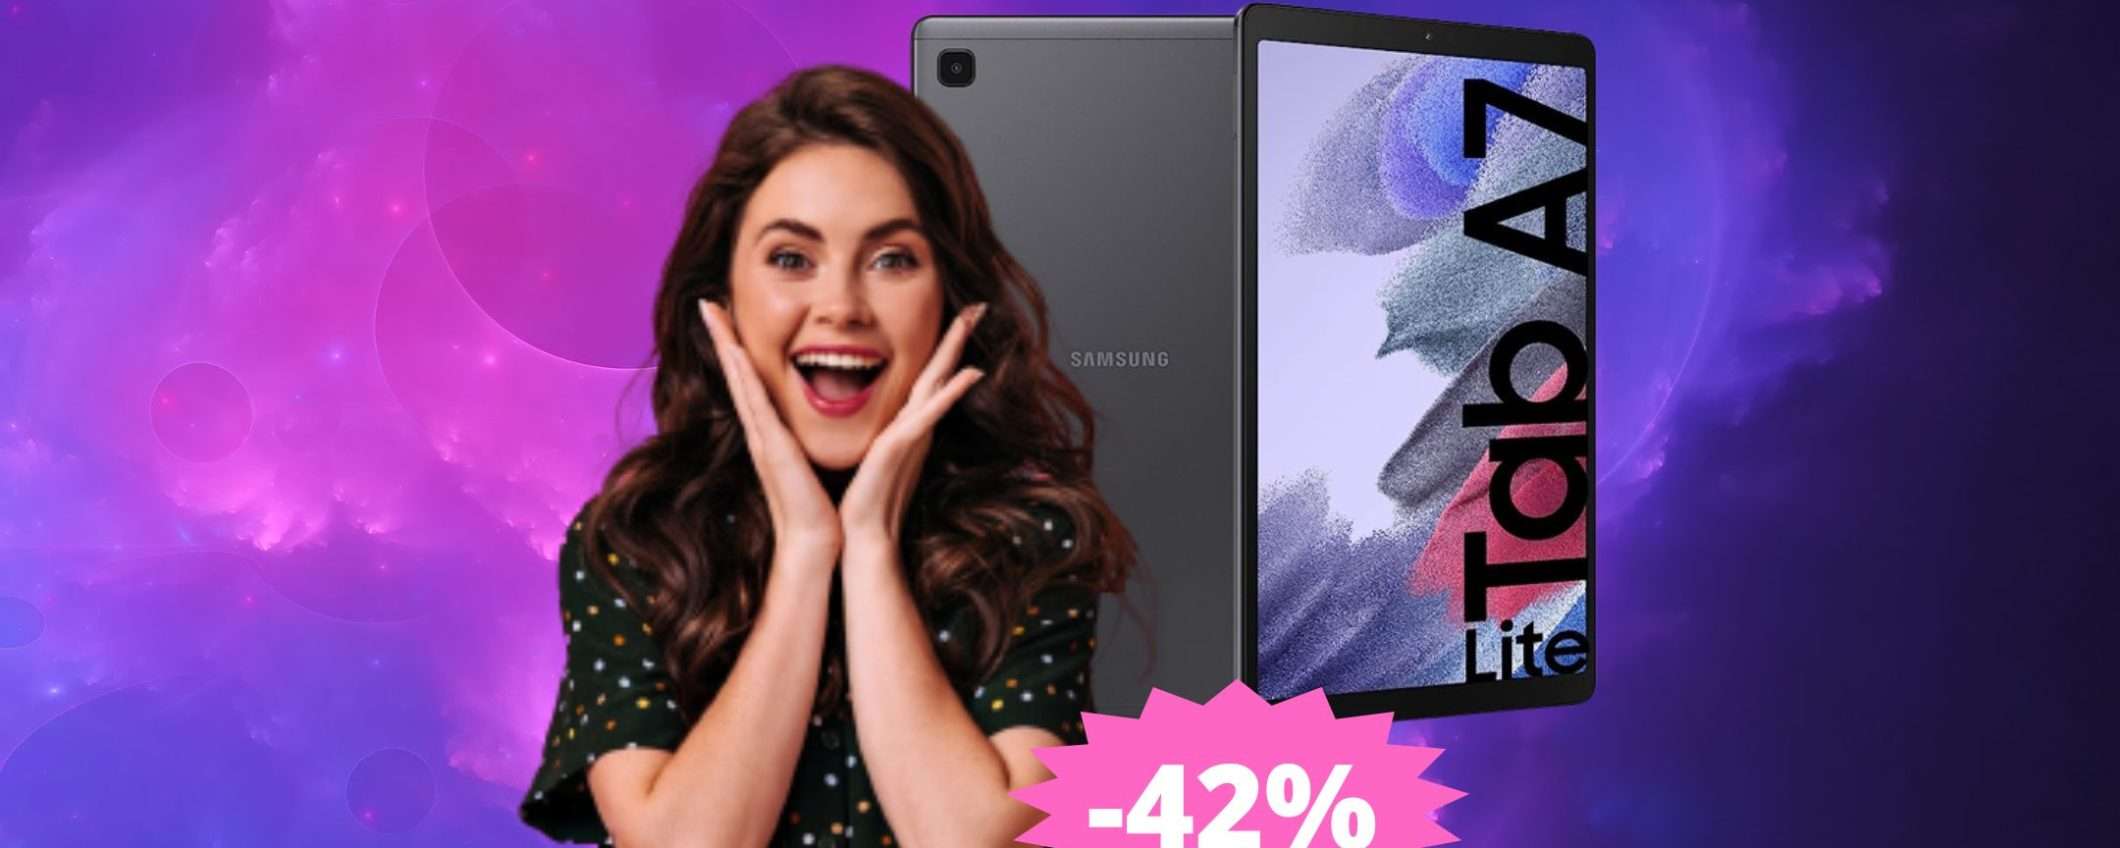 Samsung Galaxy Tab A7 Lite: prezzo FOLLE su Amazon (-42%)